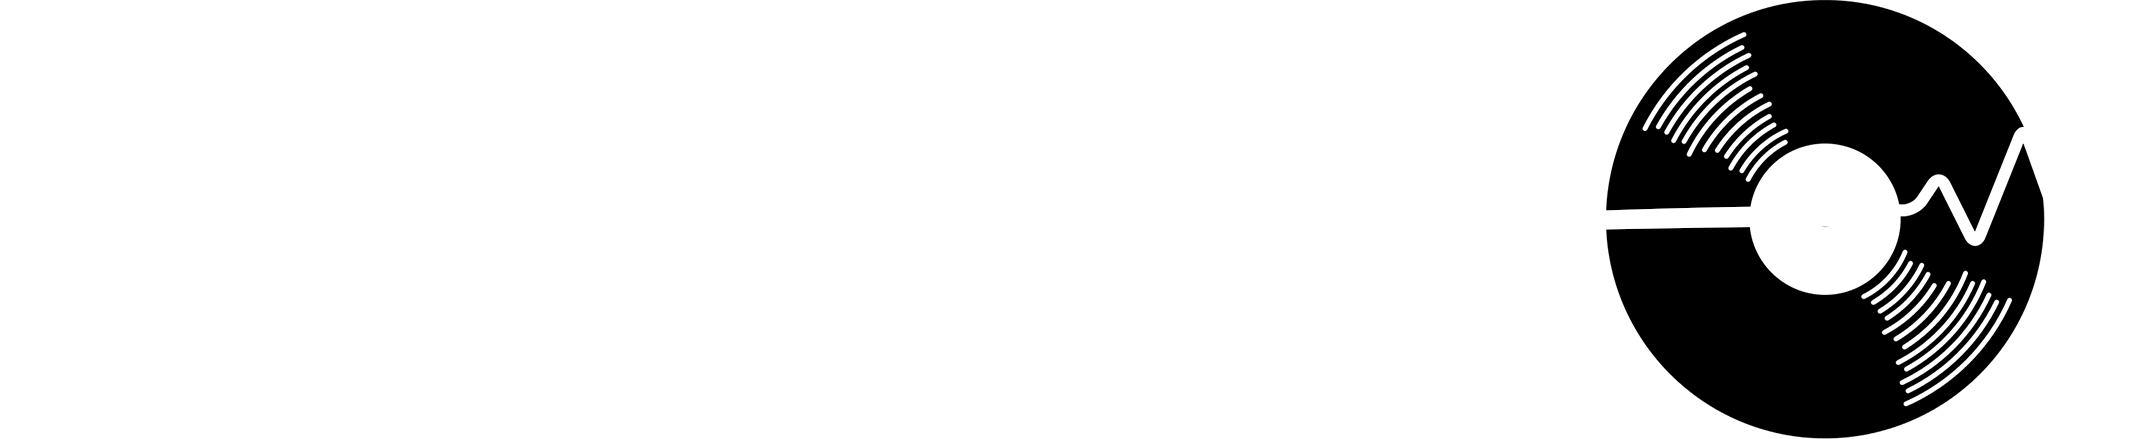 logo abadenn-event.com